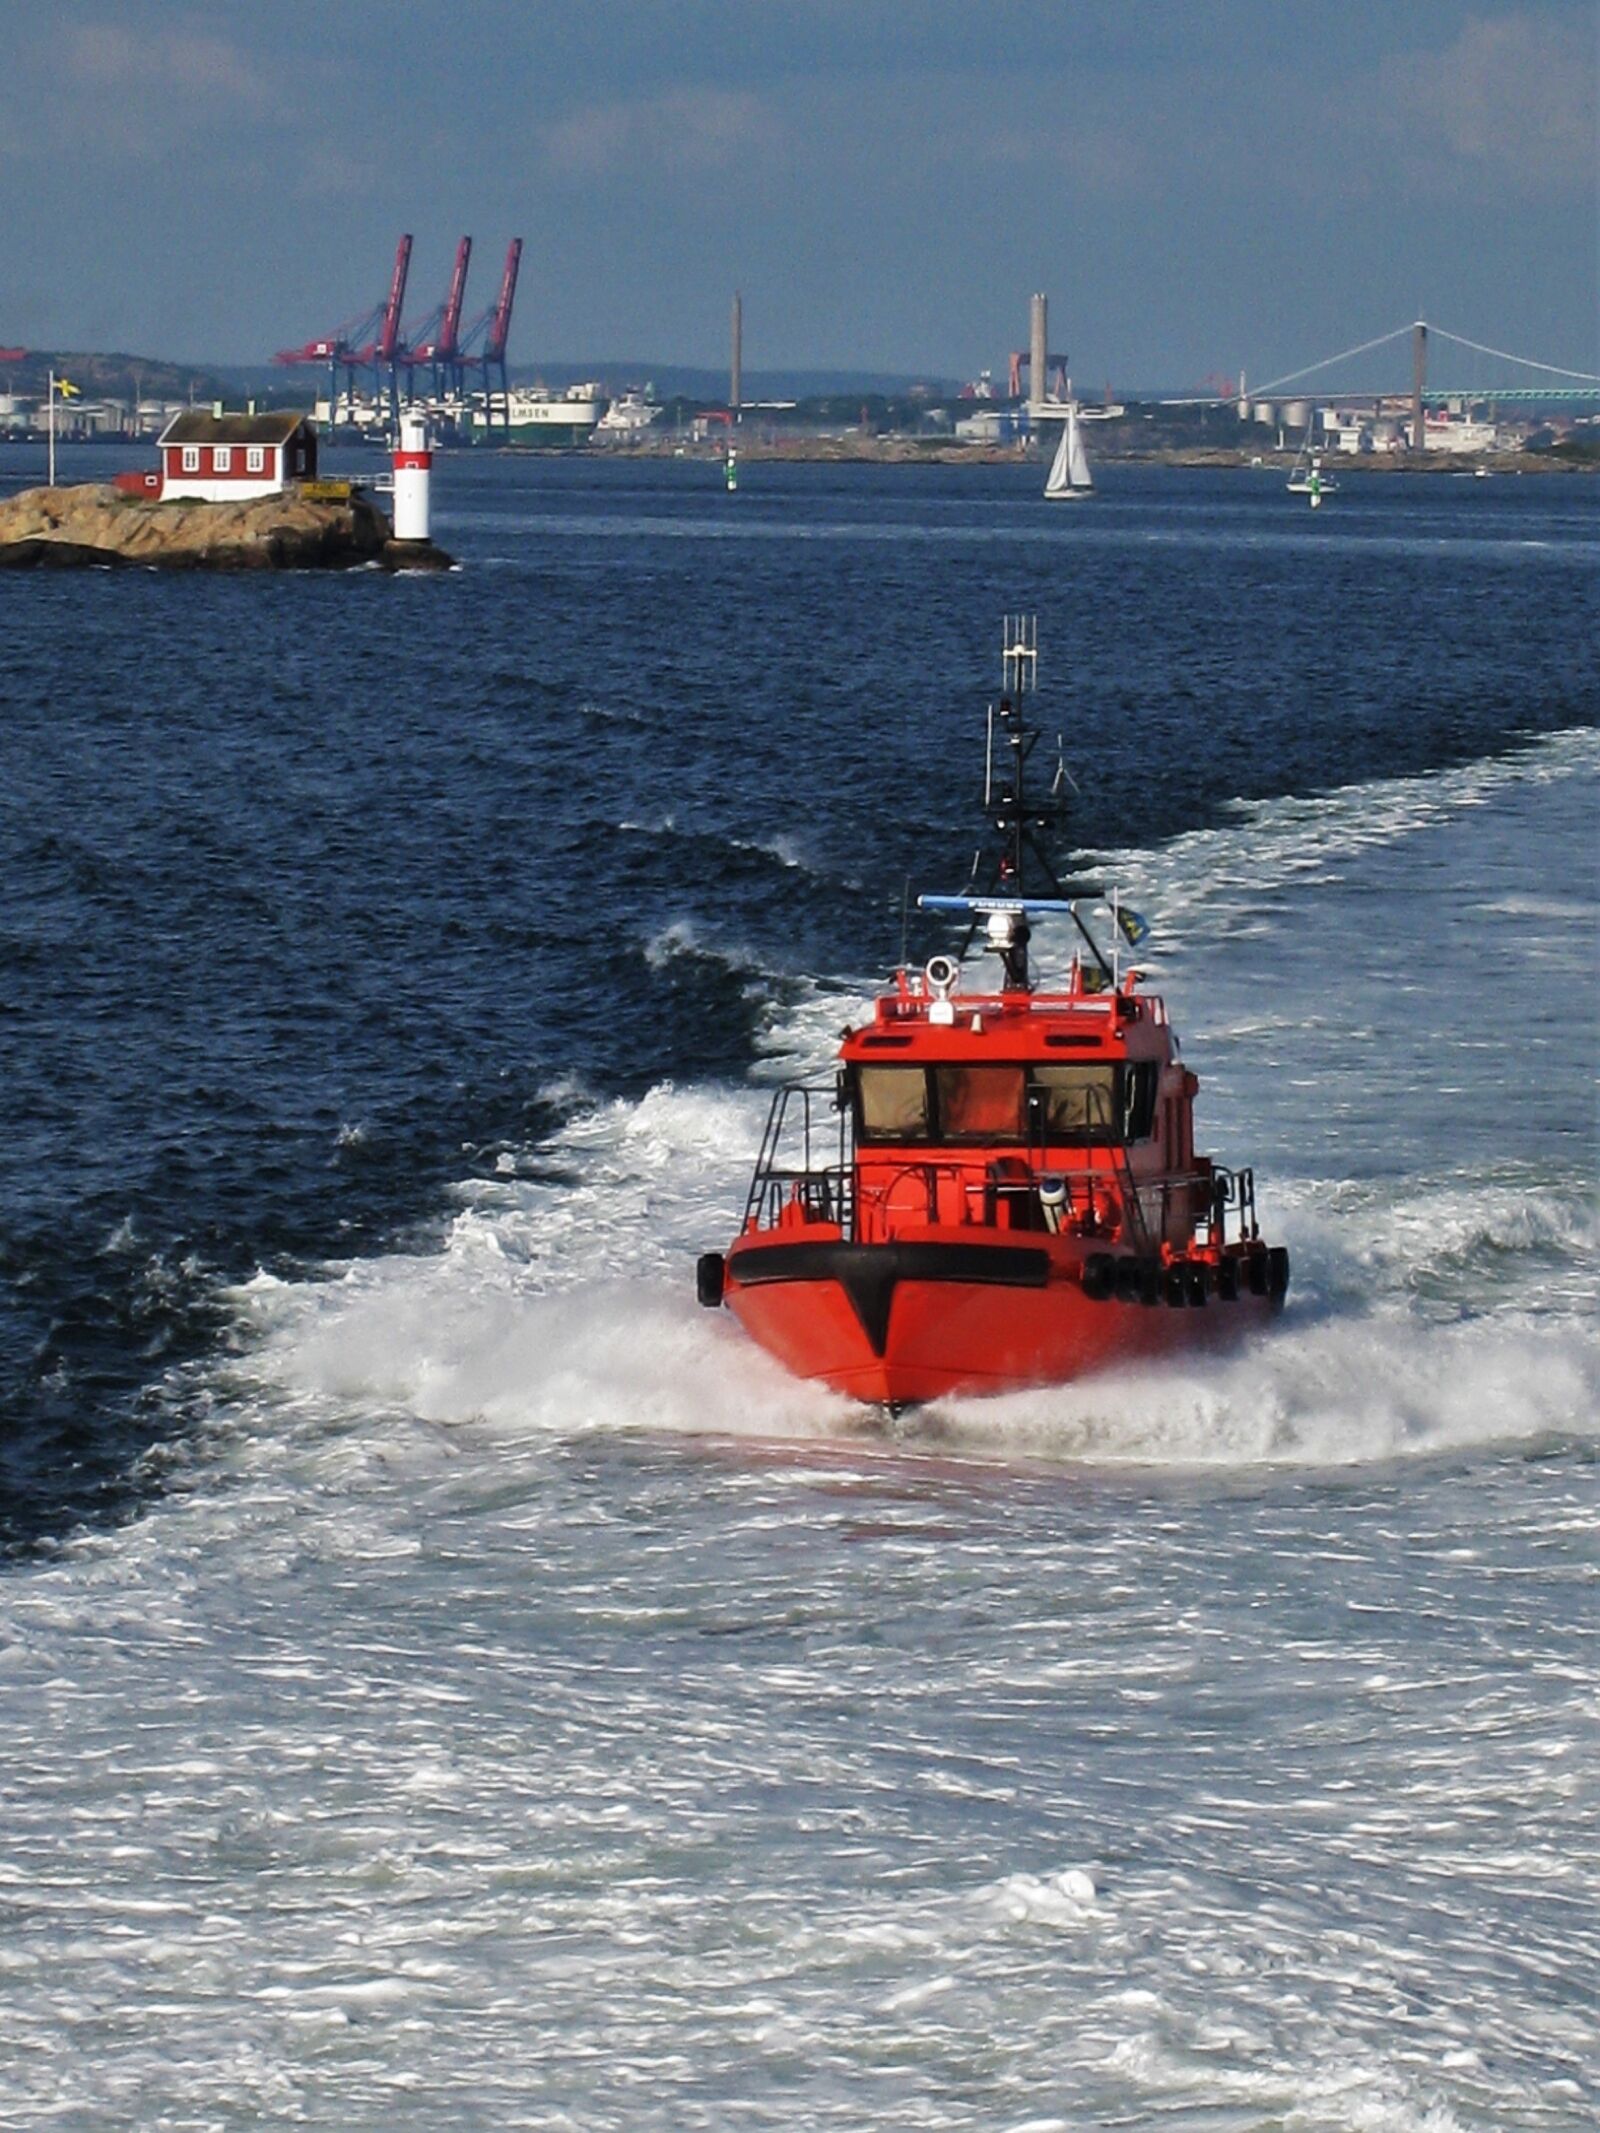 Canon DIGITAL IXUS 860 IS sample photo. Gothenburg, swedish pilot boat photography